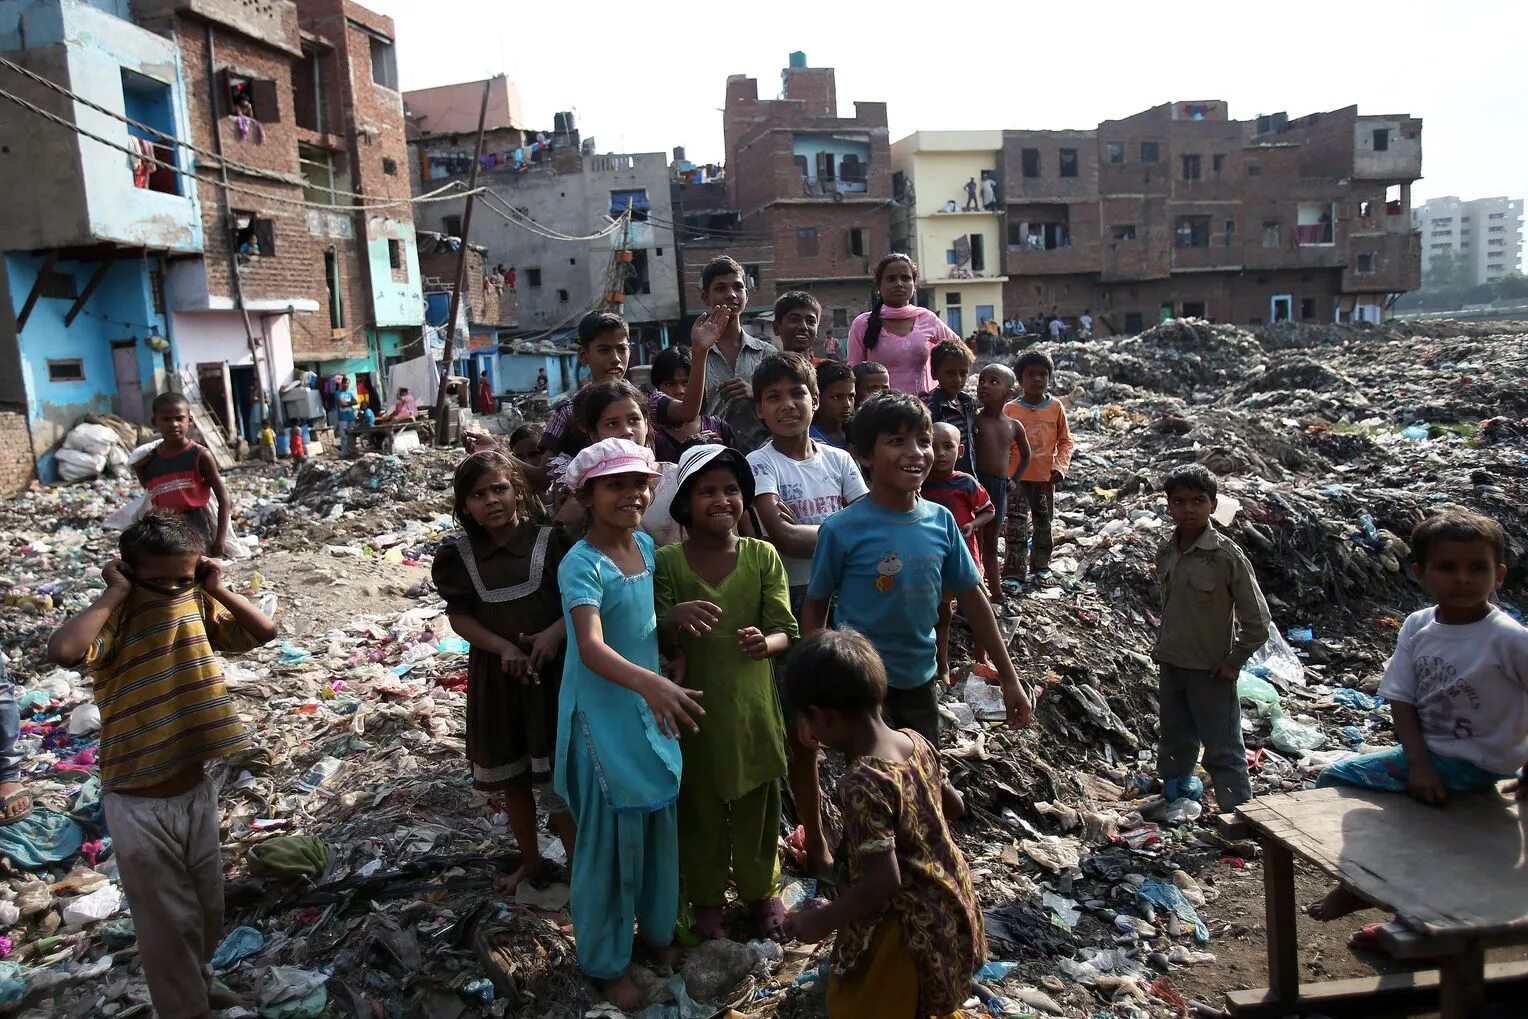 Жизнь в бедных странах. Индия Нью-Дели трущобы Нью. Нью Дели трущобы. Дели Индия трущобы. ОАЭ нищета трущобы.